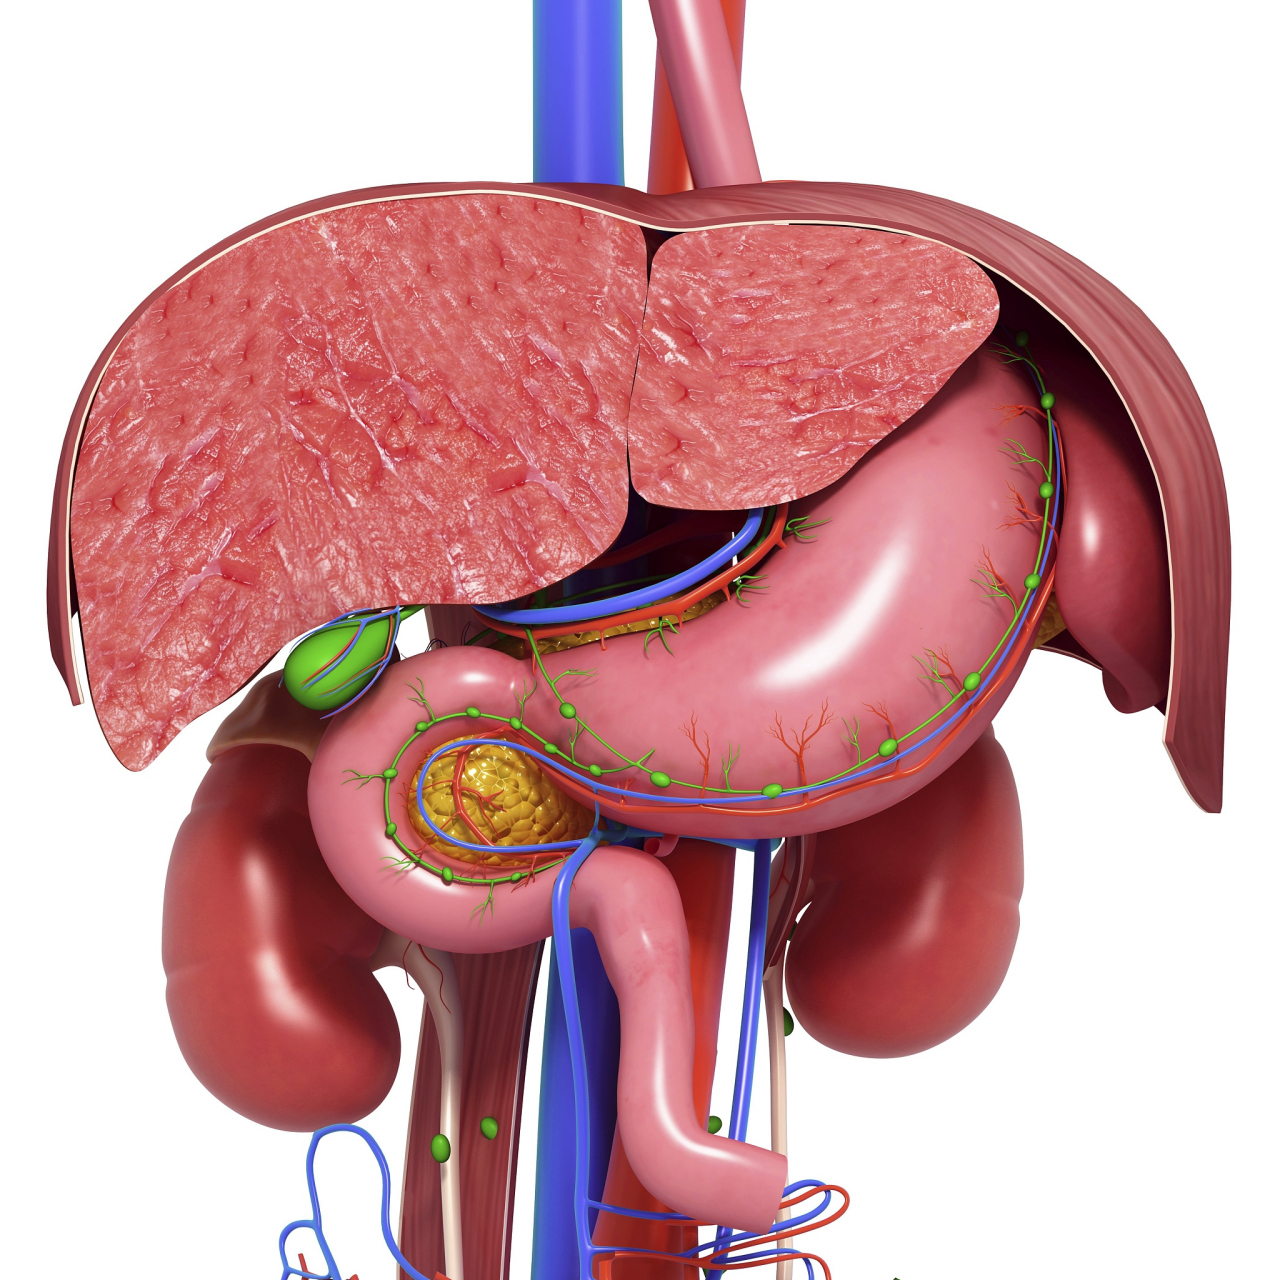 脾脏是一个重要的淋巴器官,位于左上腹部,紧靠胸骨后方